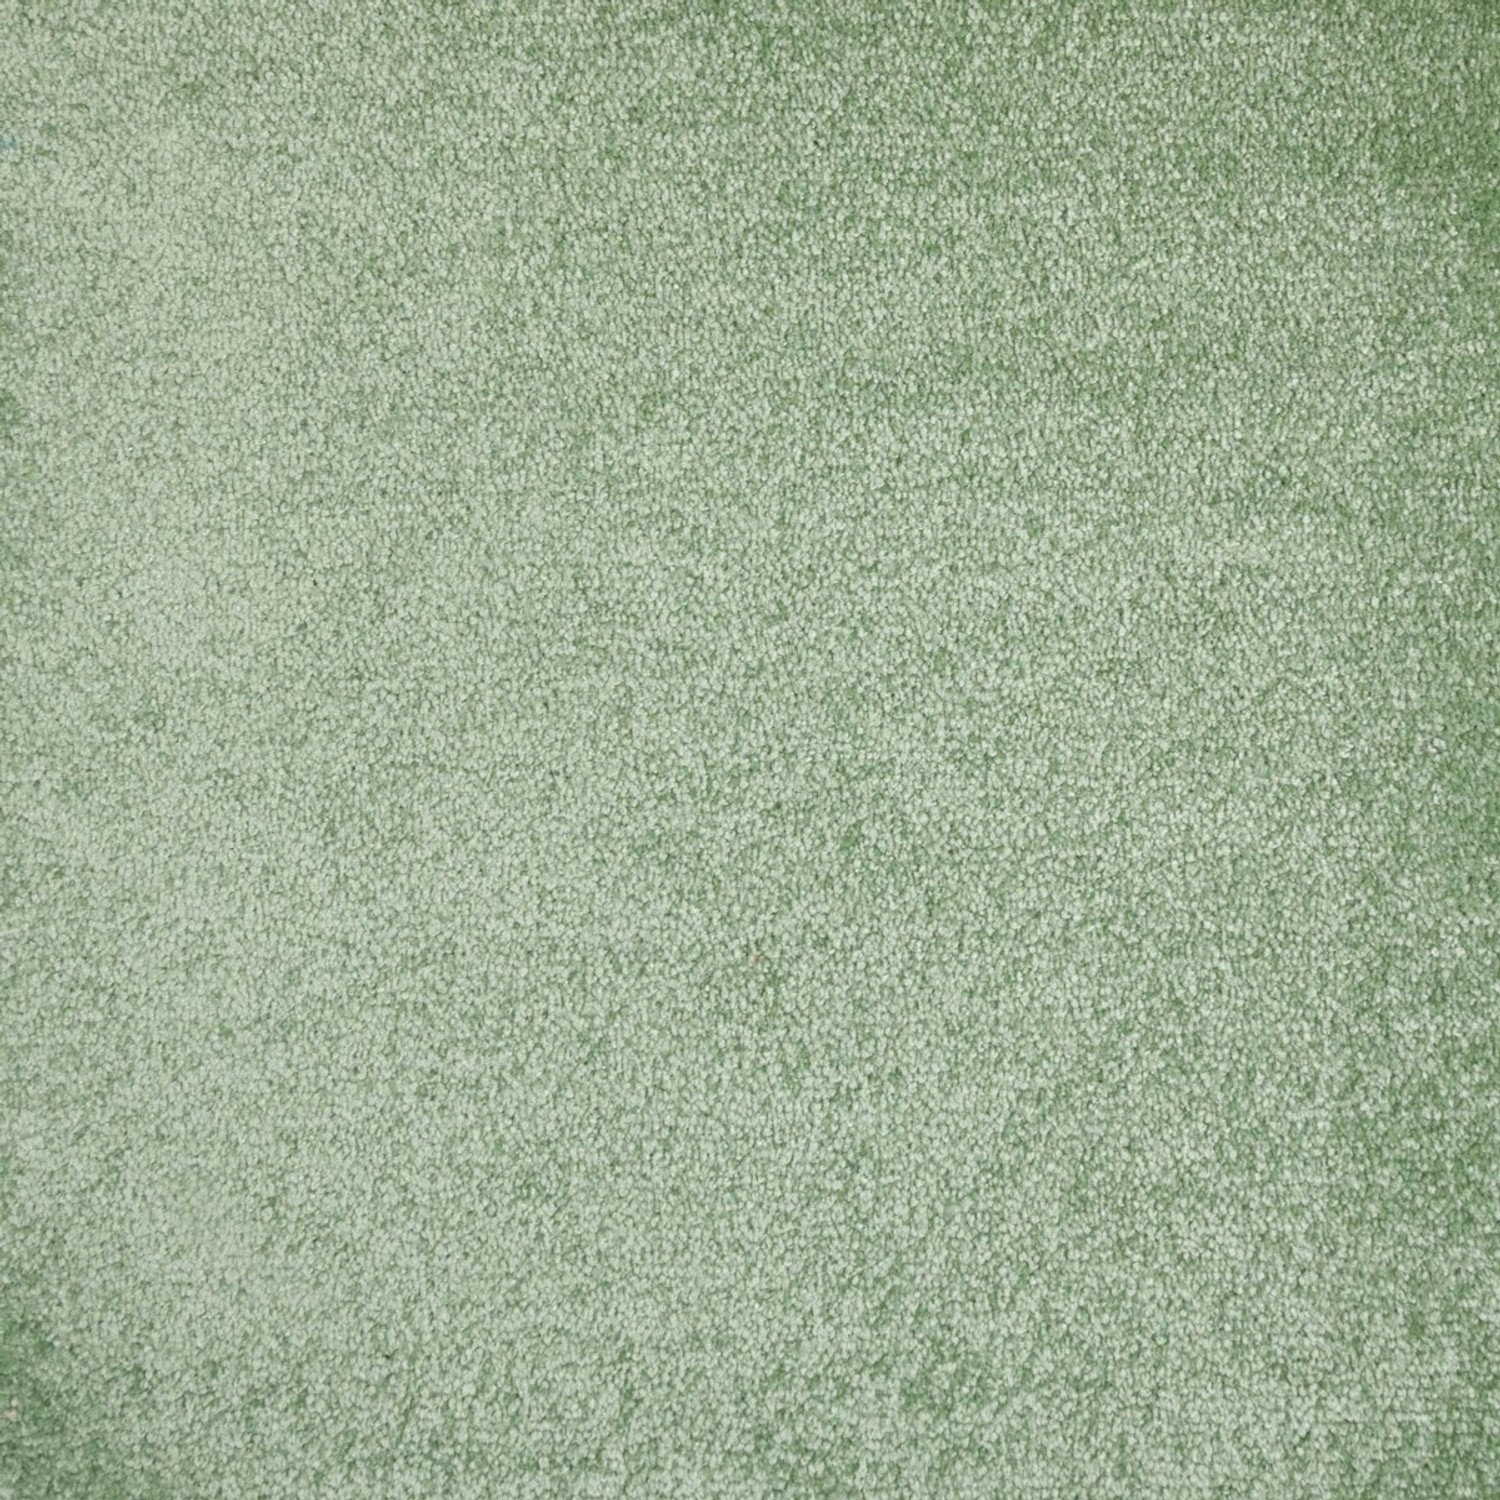 Schatex Salbeigrün Teppich Fliesen Teppichfliesen Selbstliegend Grün Für Wohnzimmer Und Schlafzimmer Veloursteppich Als Fliesen In Hellgrün 50x50 Cm von Schatex